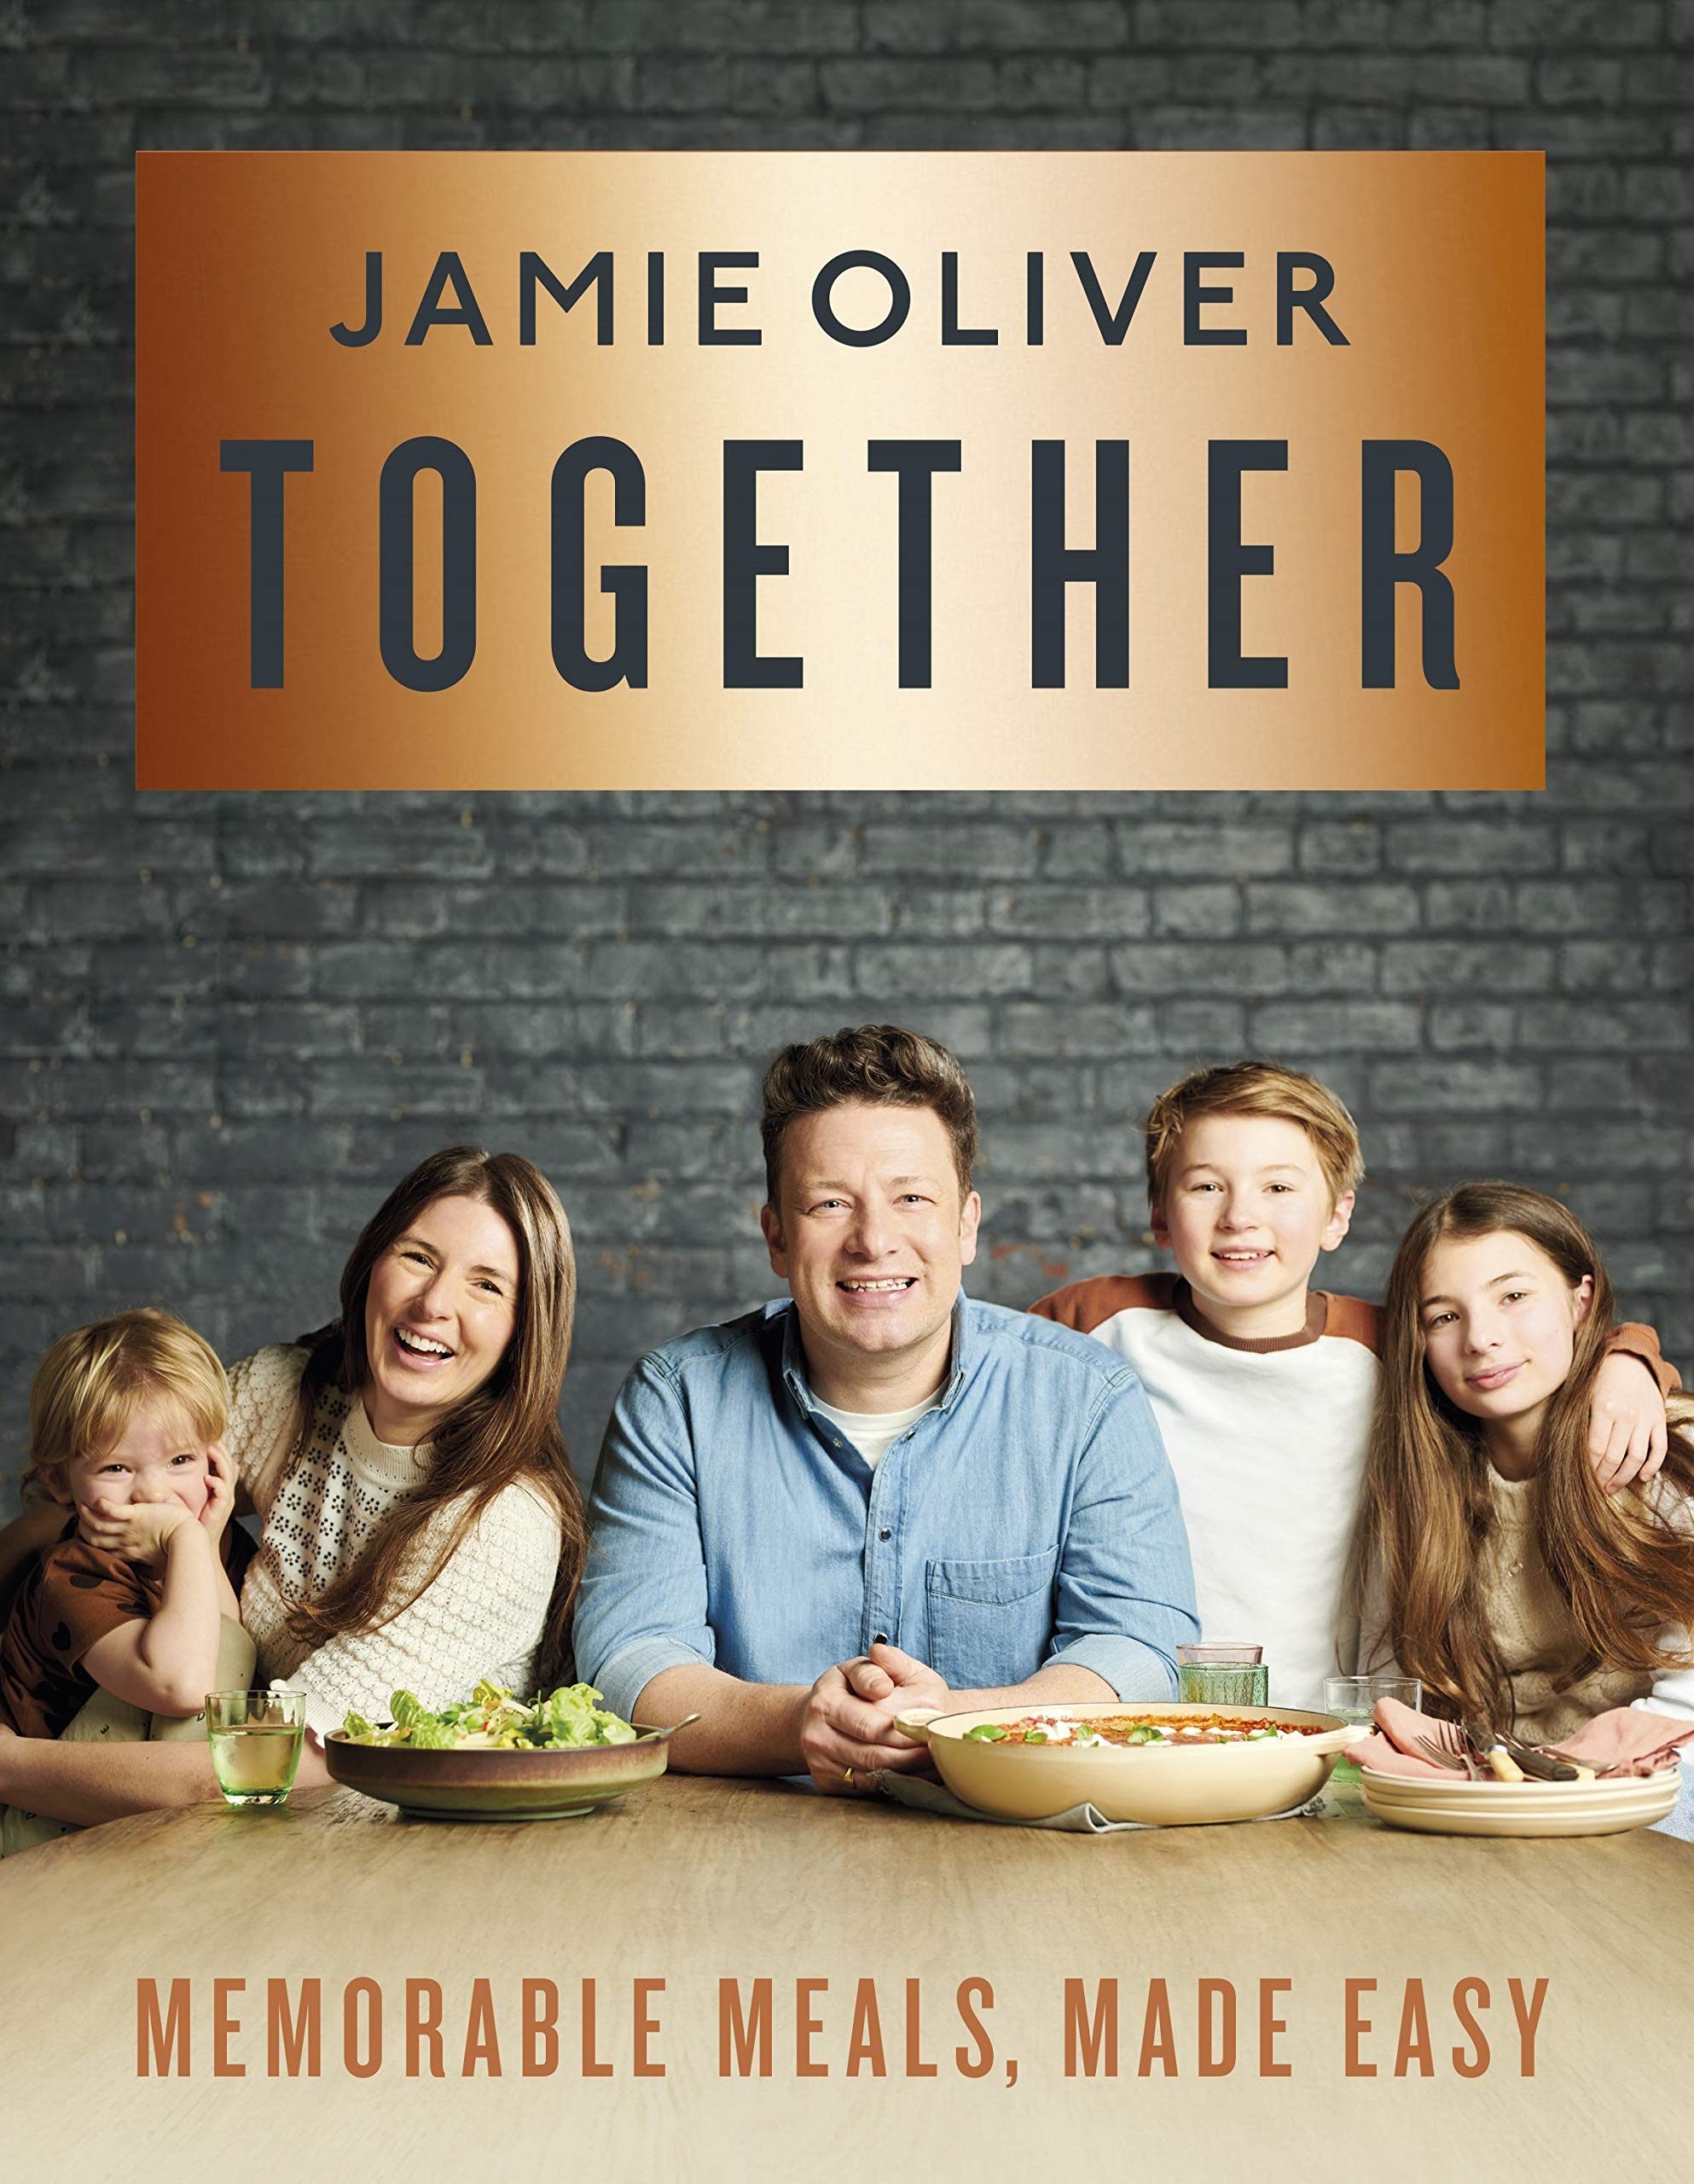 Together: Memorable Meals Made Easy (Jamie Oliver)